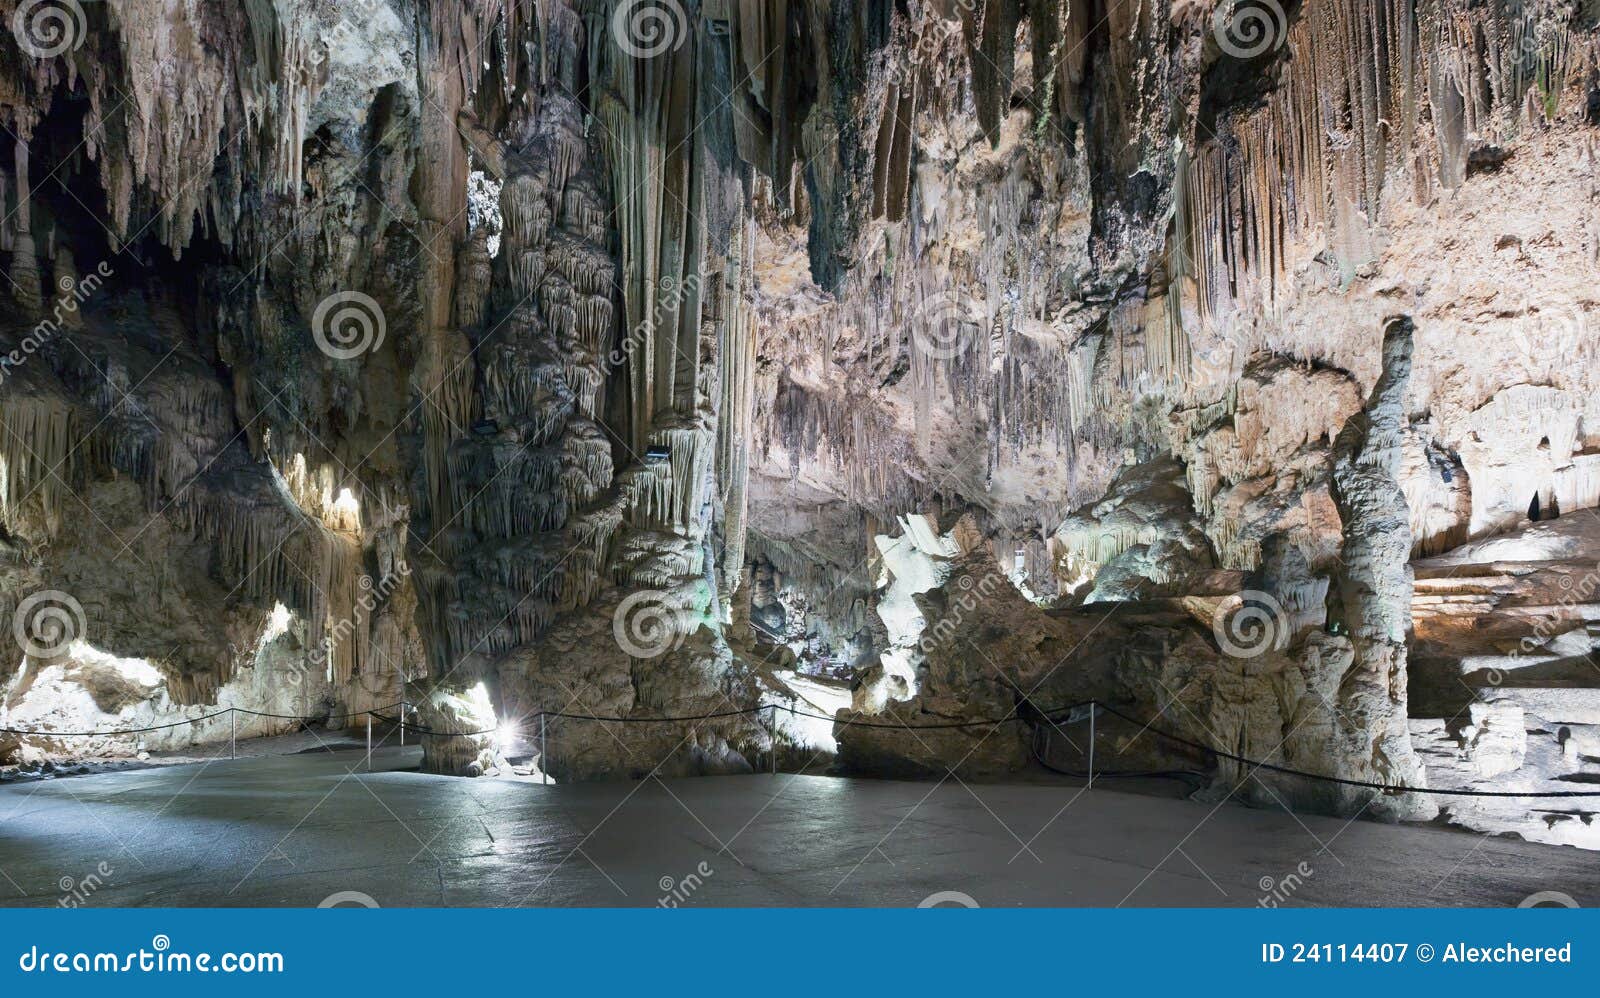 panorama of cave, nerja - malaga - spain